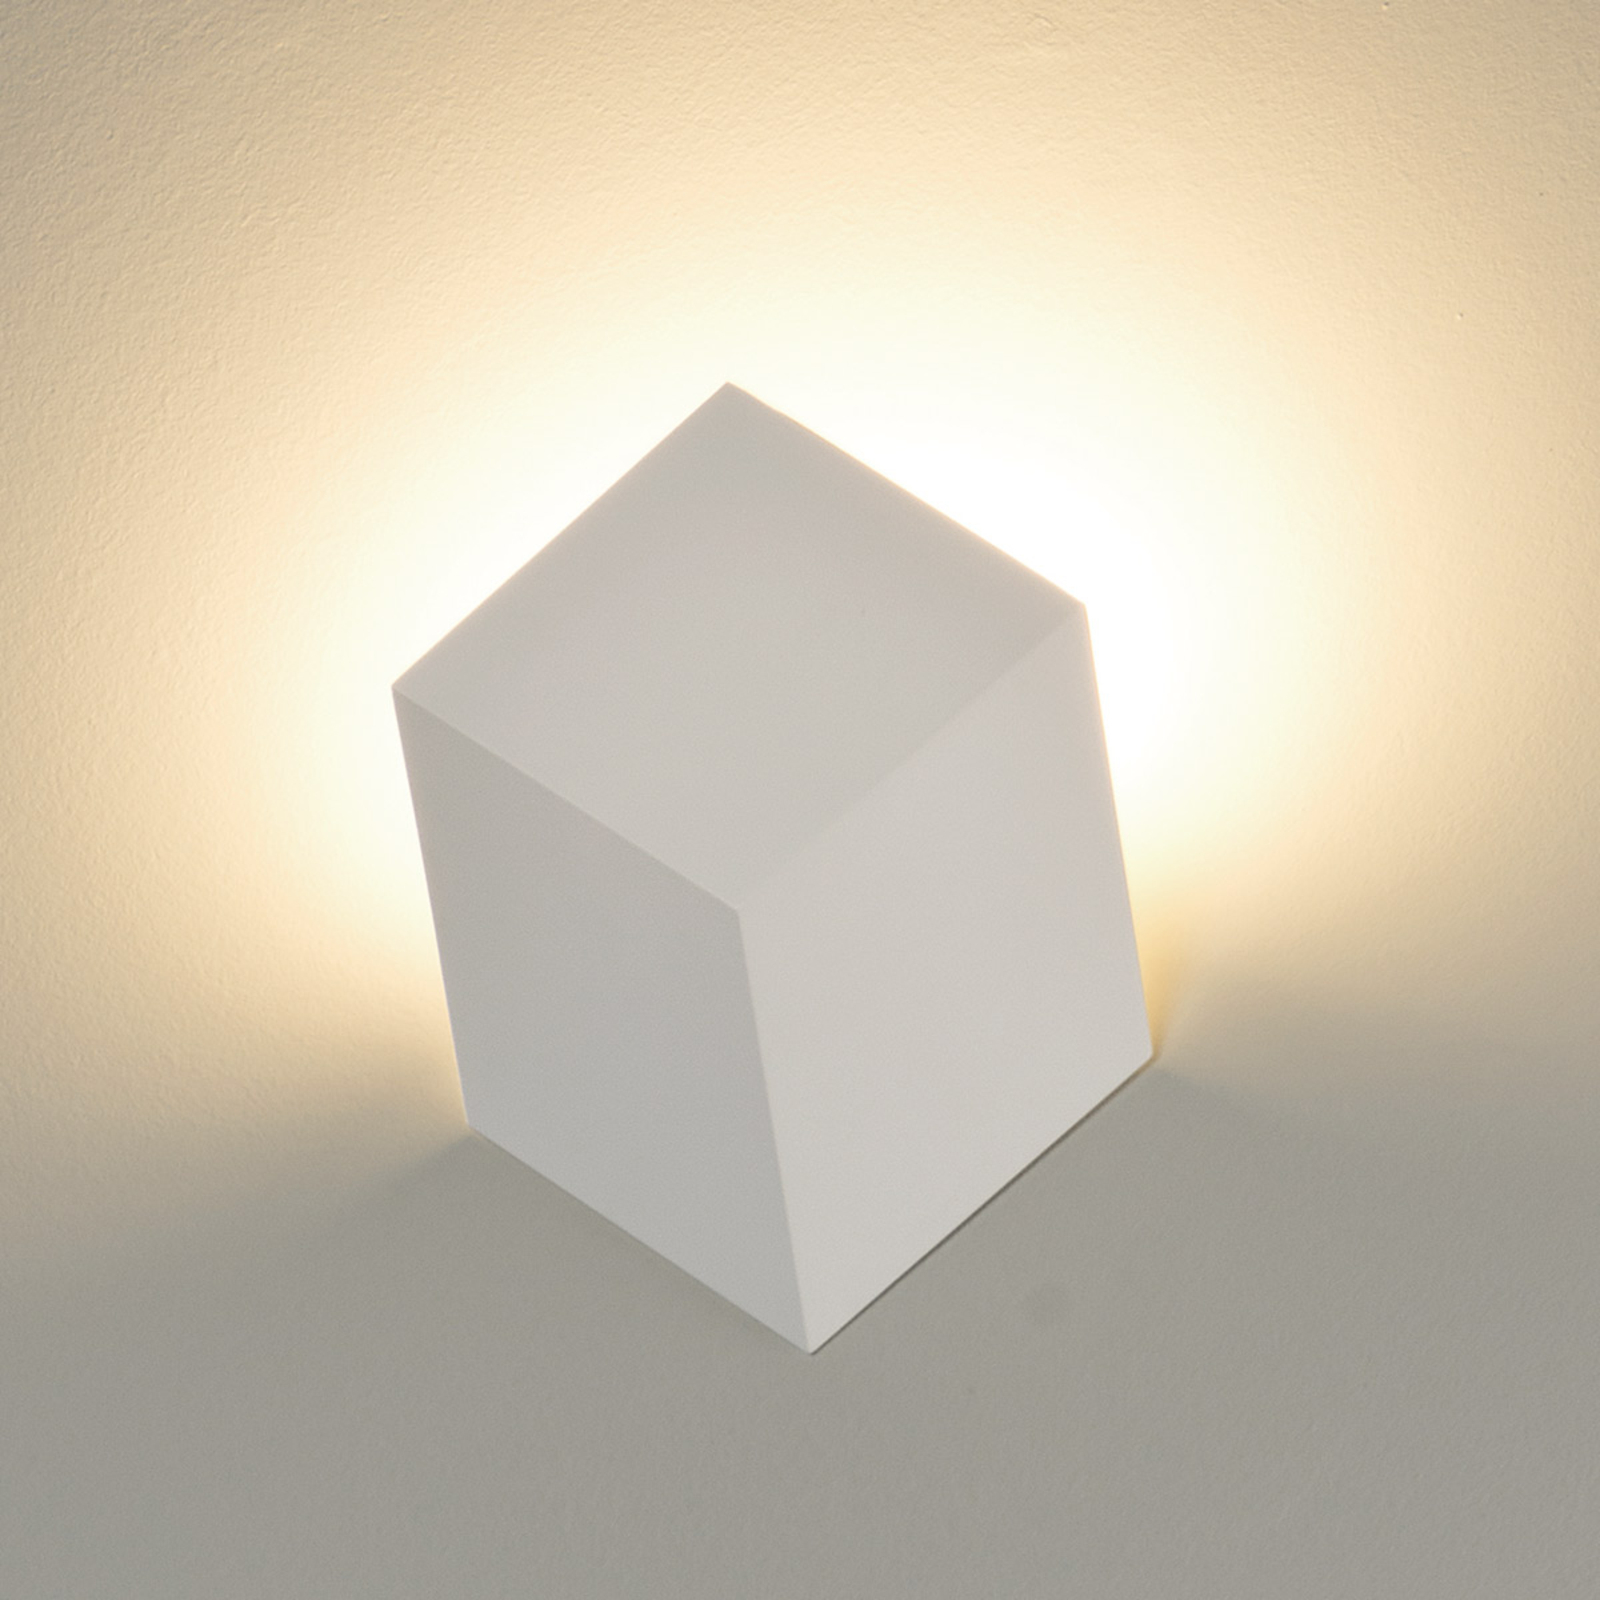 Effective QB LED wall light